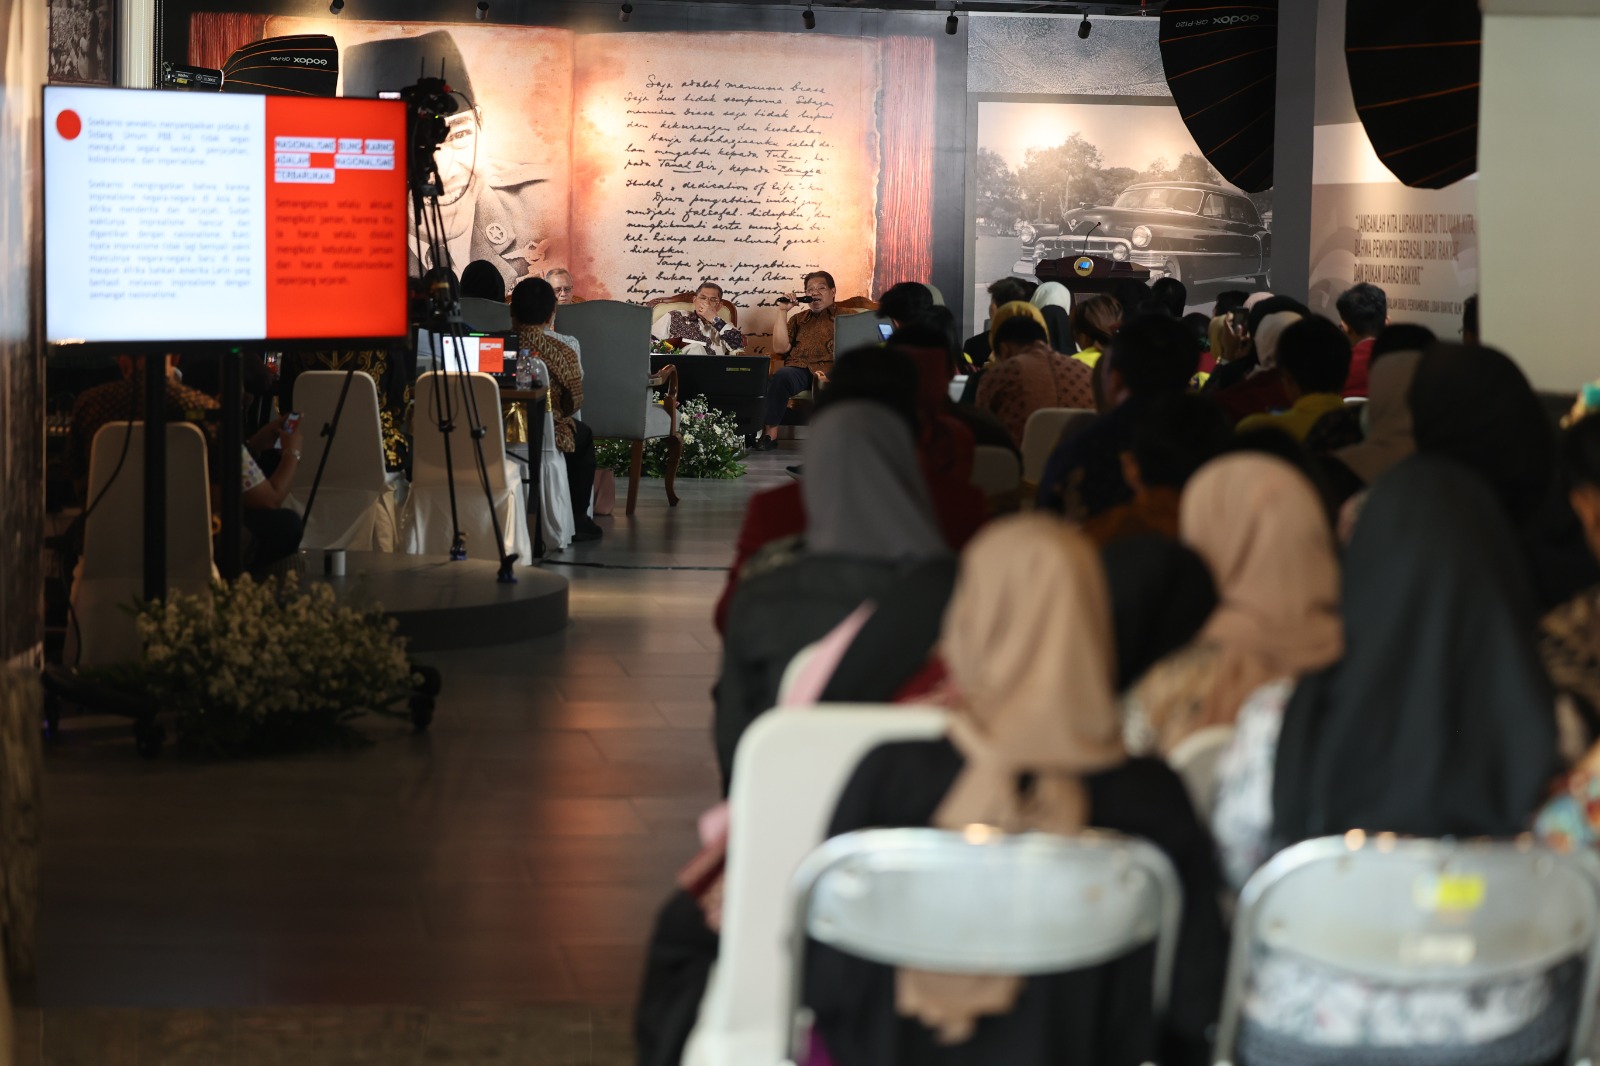 Peringatan ke-63 Pidato Presiden Sukarno di Majelis Umum PBB ”To Build the World Anew” dan Relevansinya terhadap Peta Geopolitik